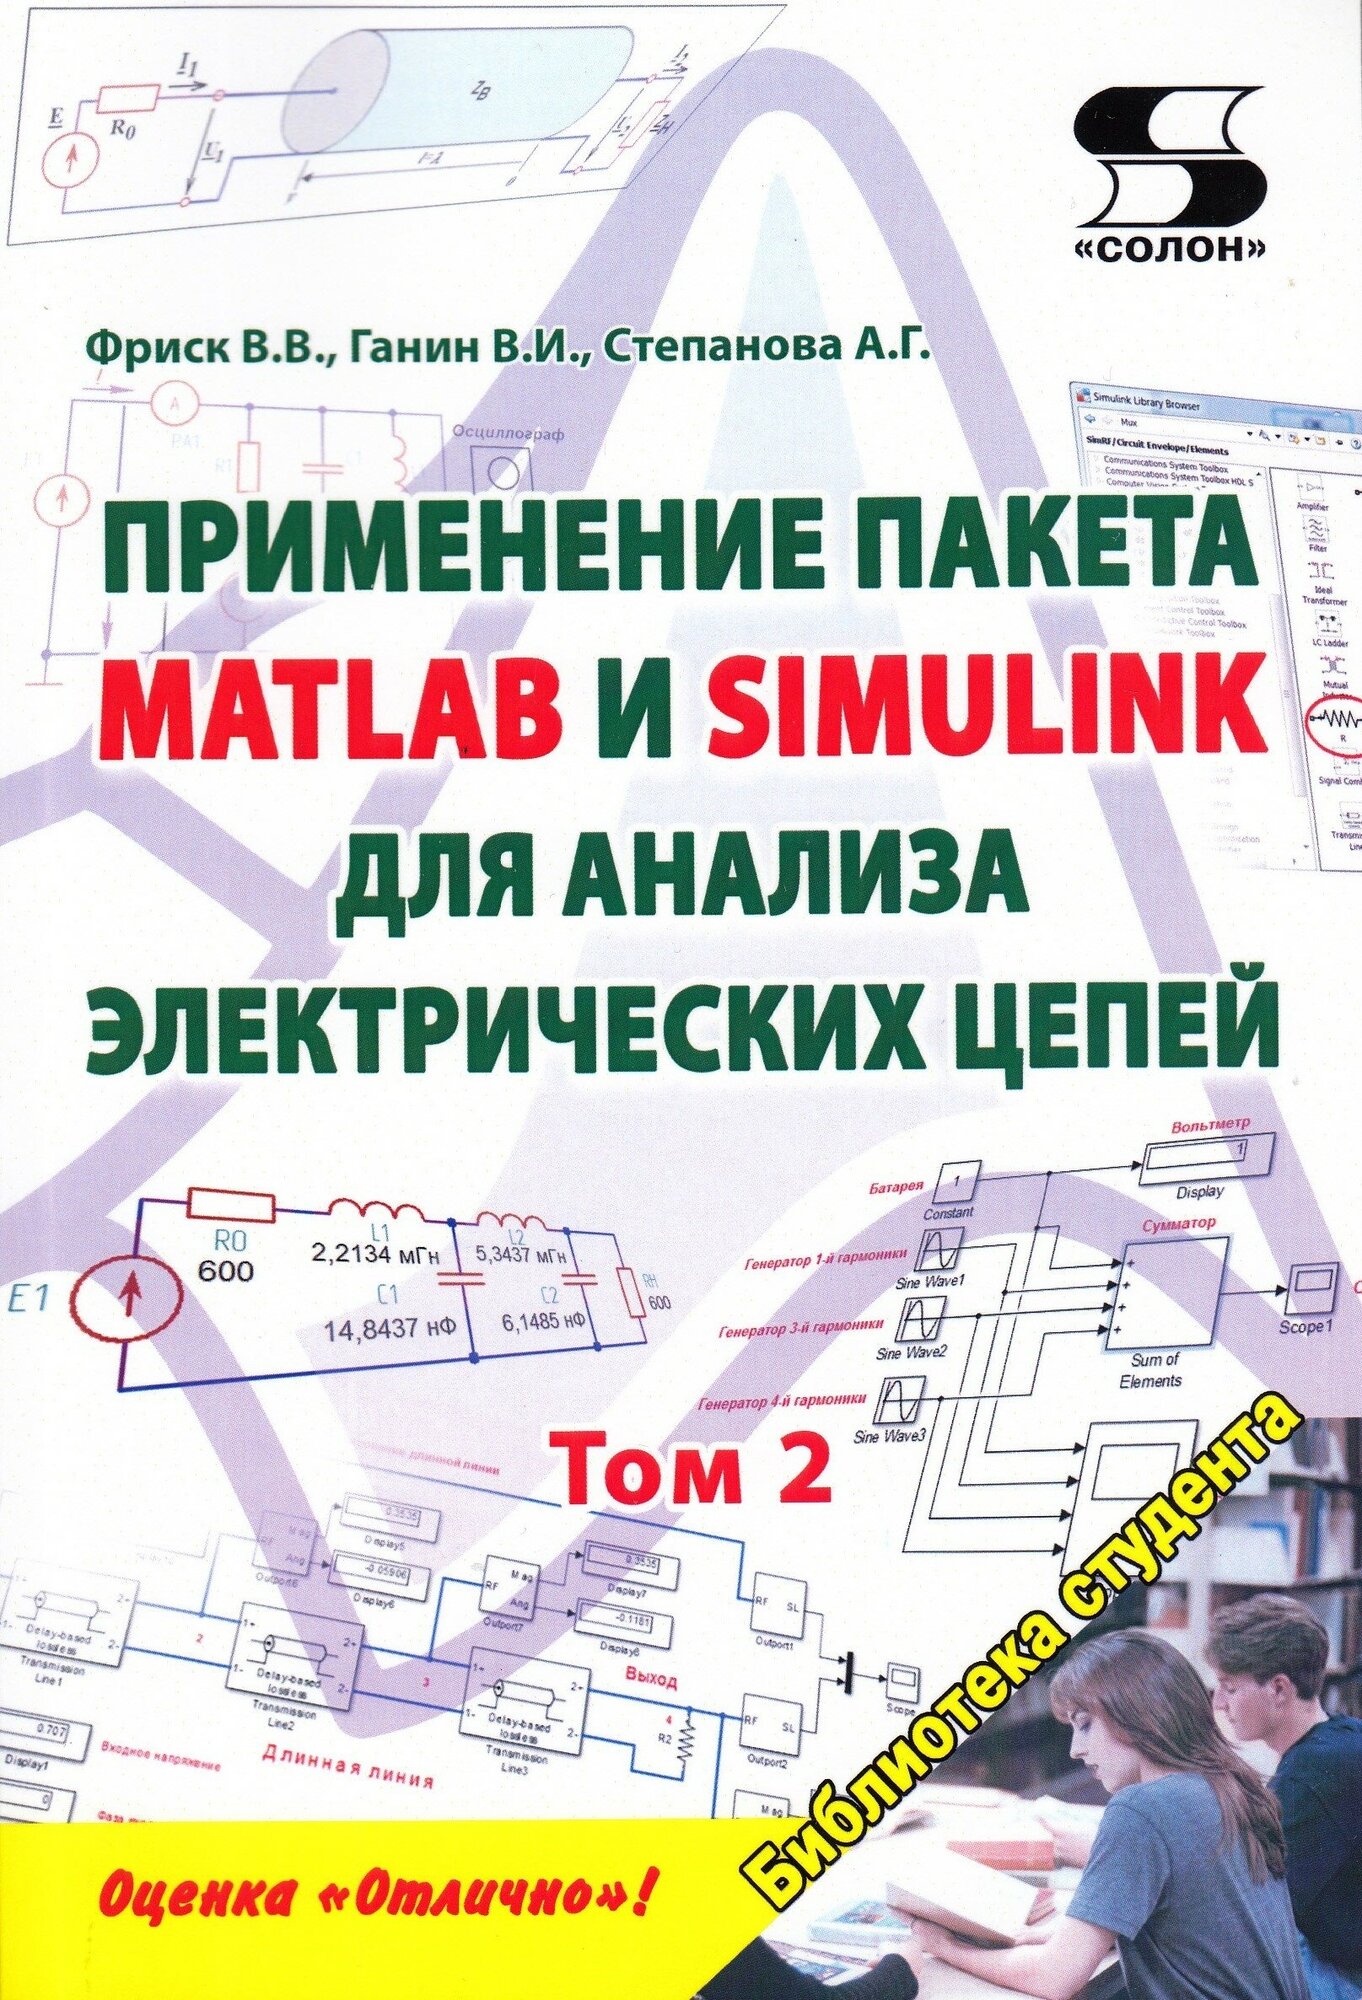 Применение пакета MATLAB и SIMULINK для анализа электрических цепей Том 2 (практикум, Фриск В. В, Ганин В. И, Степанова А. Г.